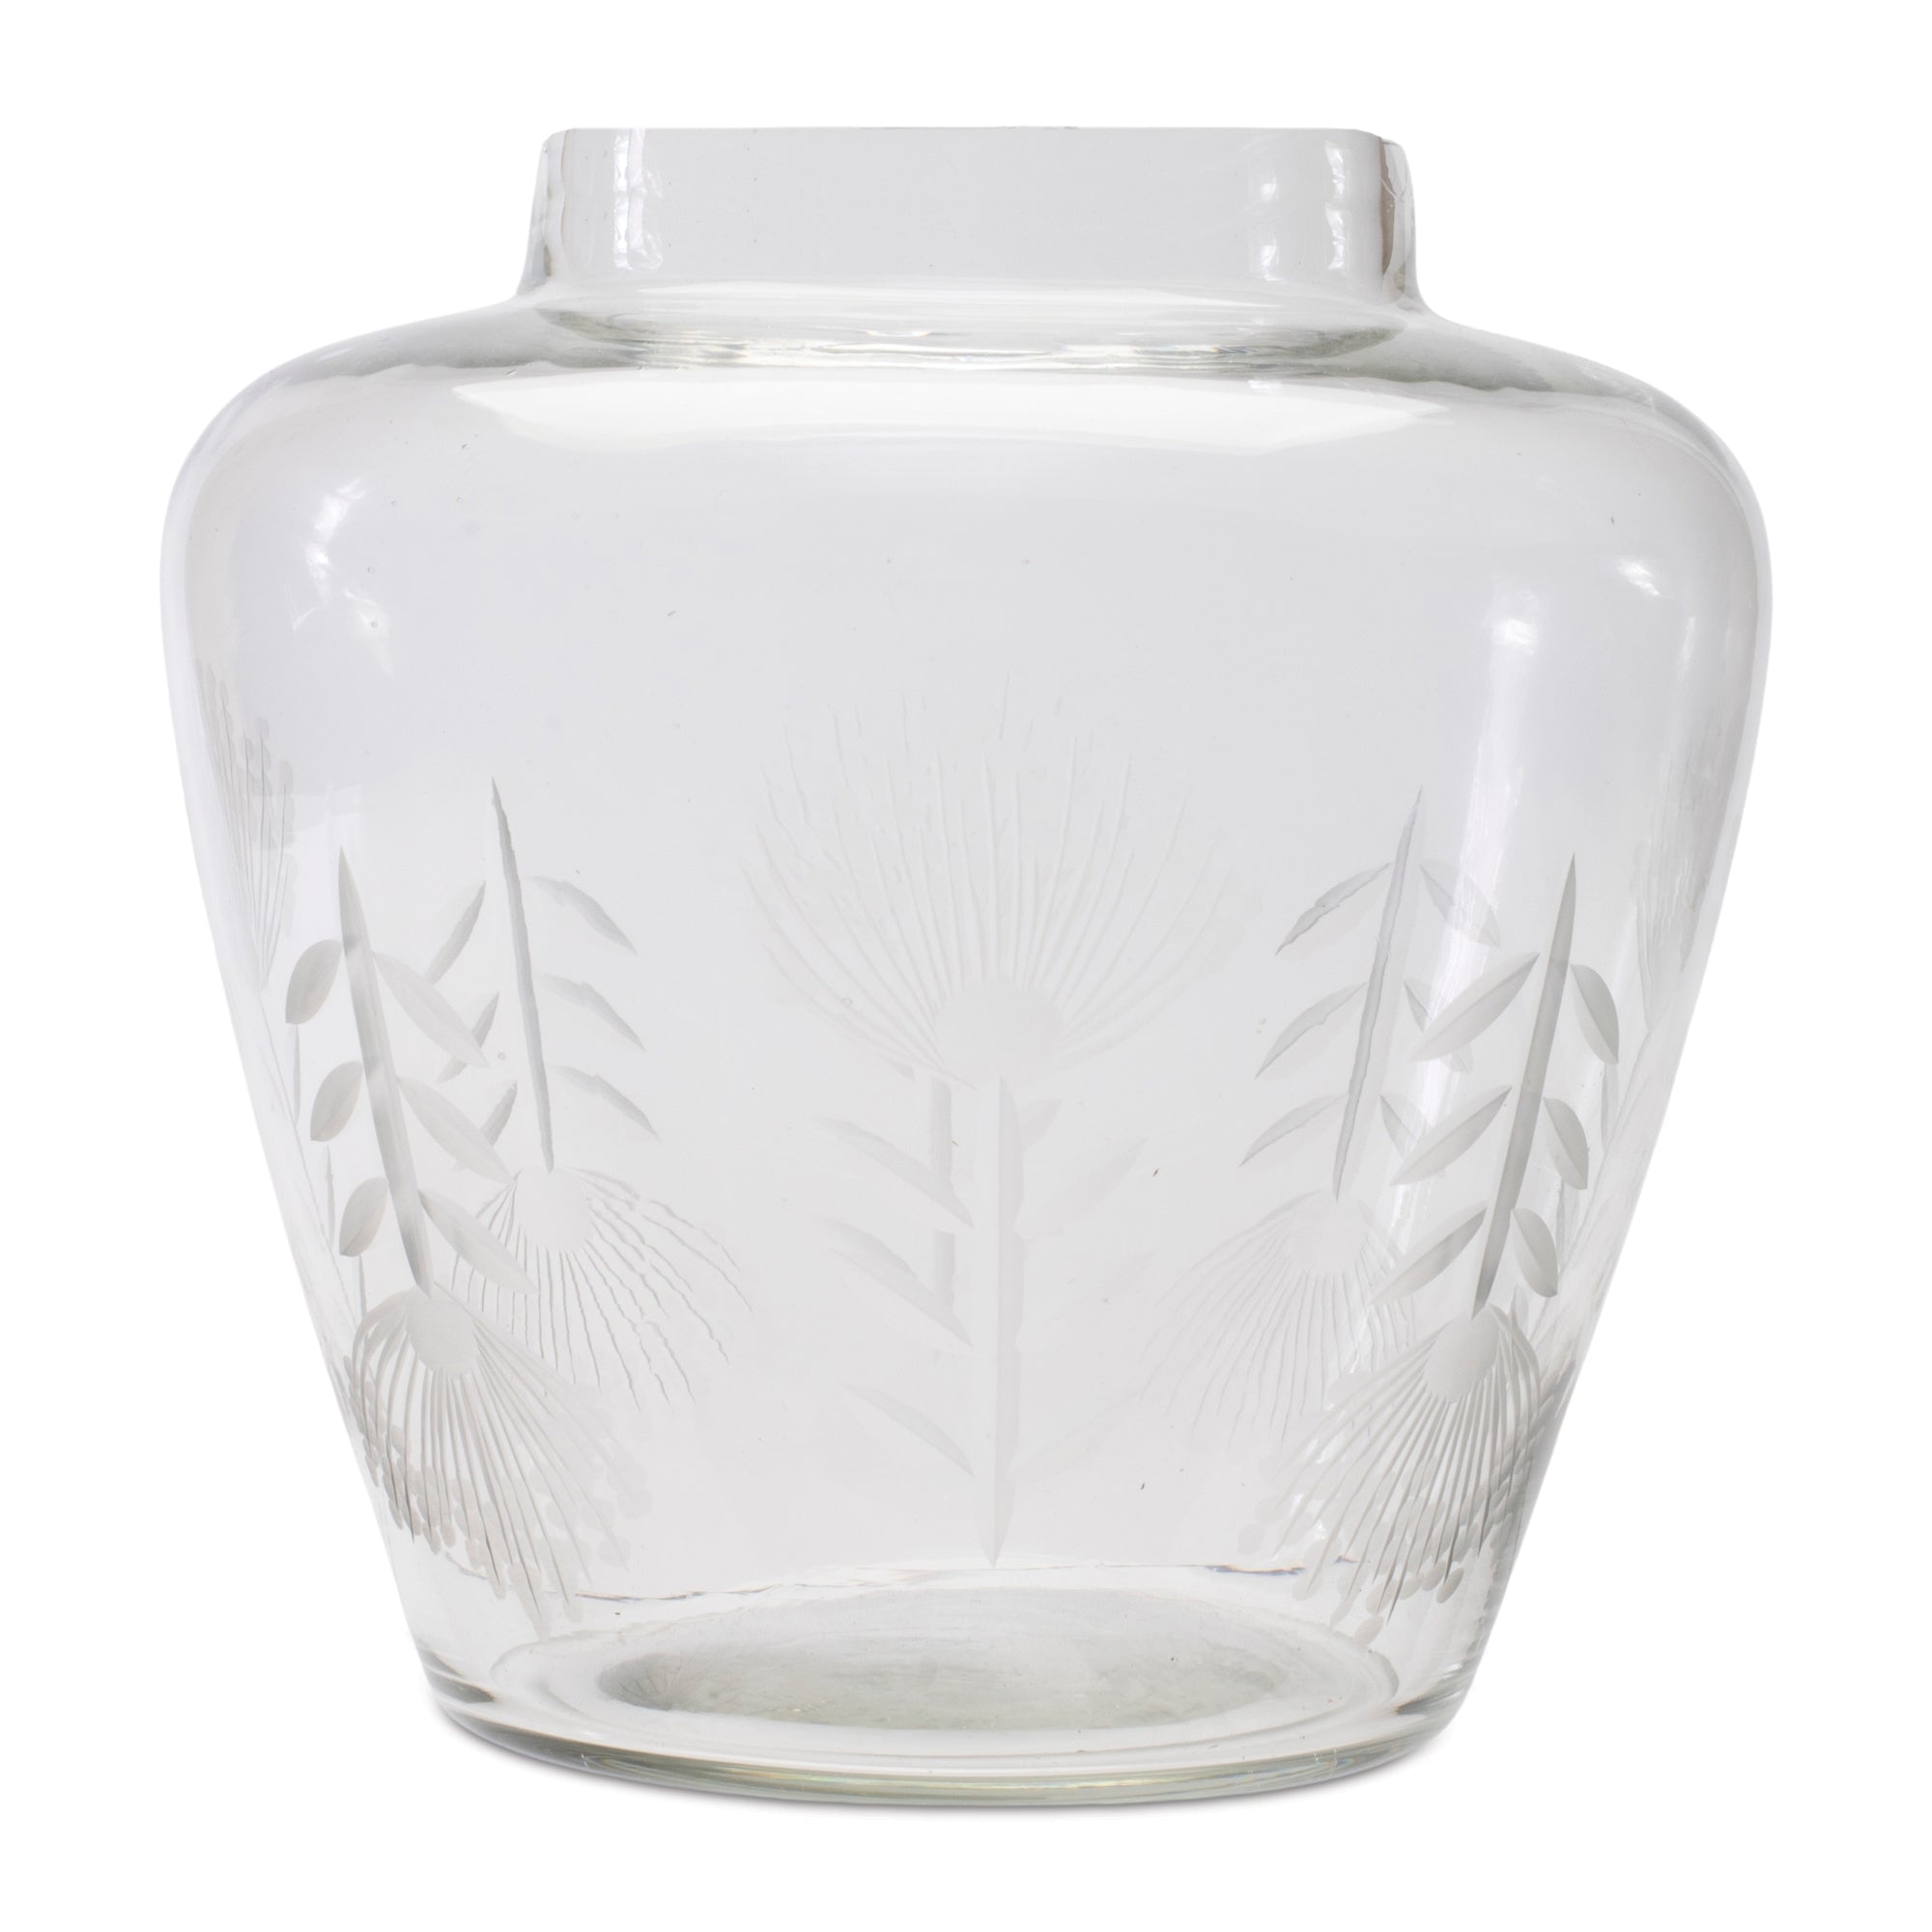 Etched Soda Lime Glass Urn Vase 6.5"D